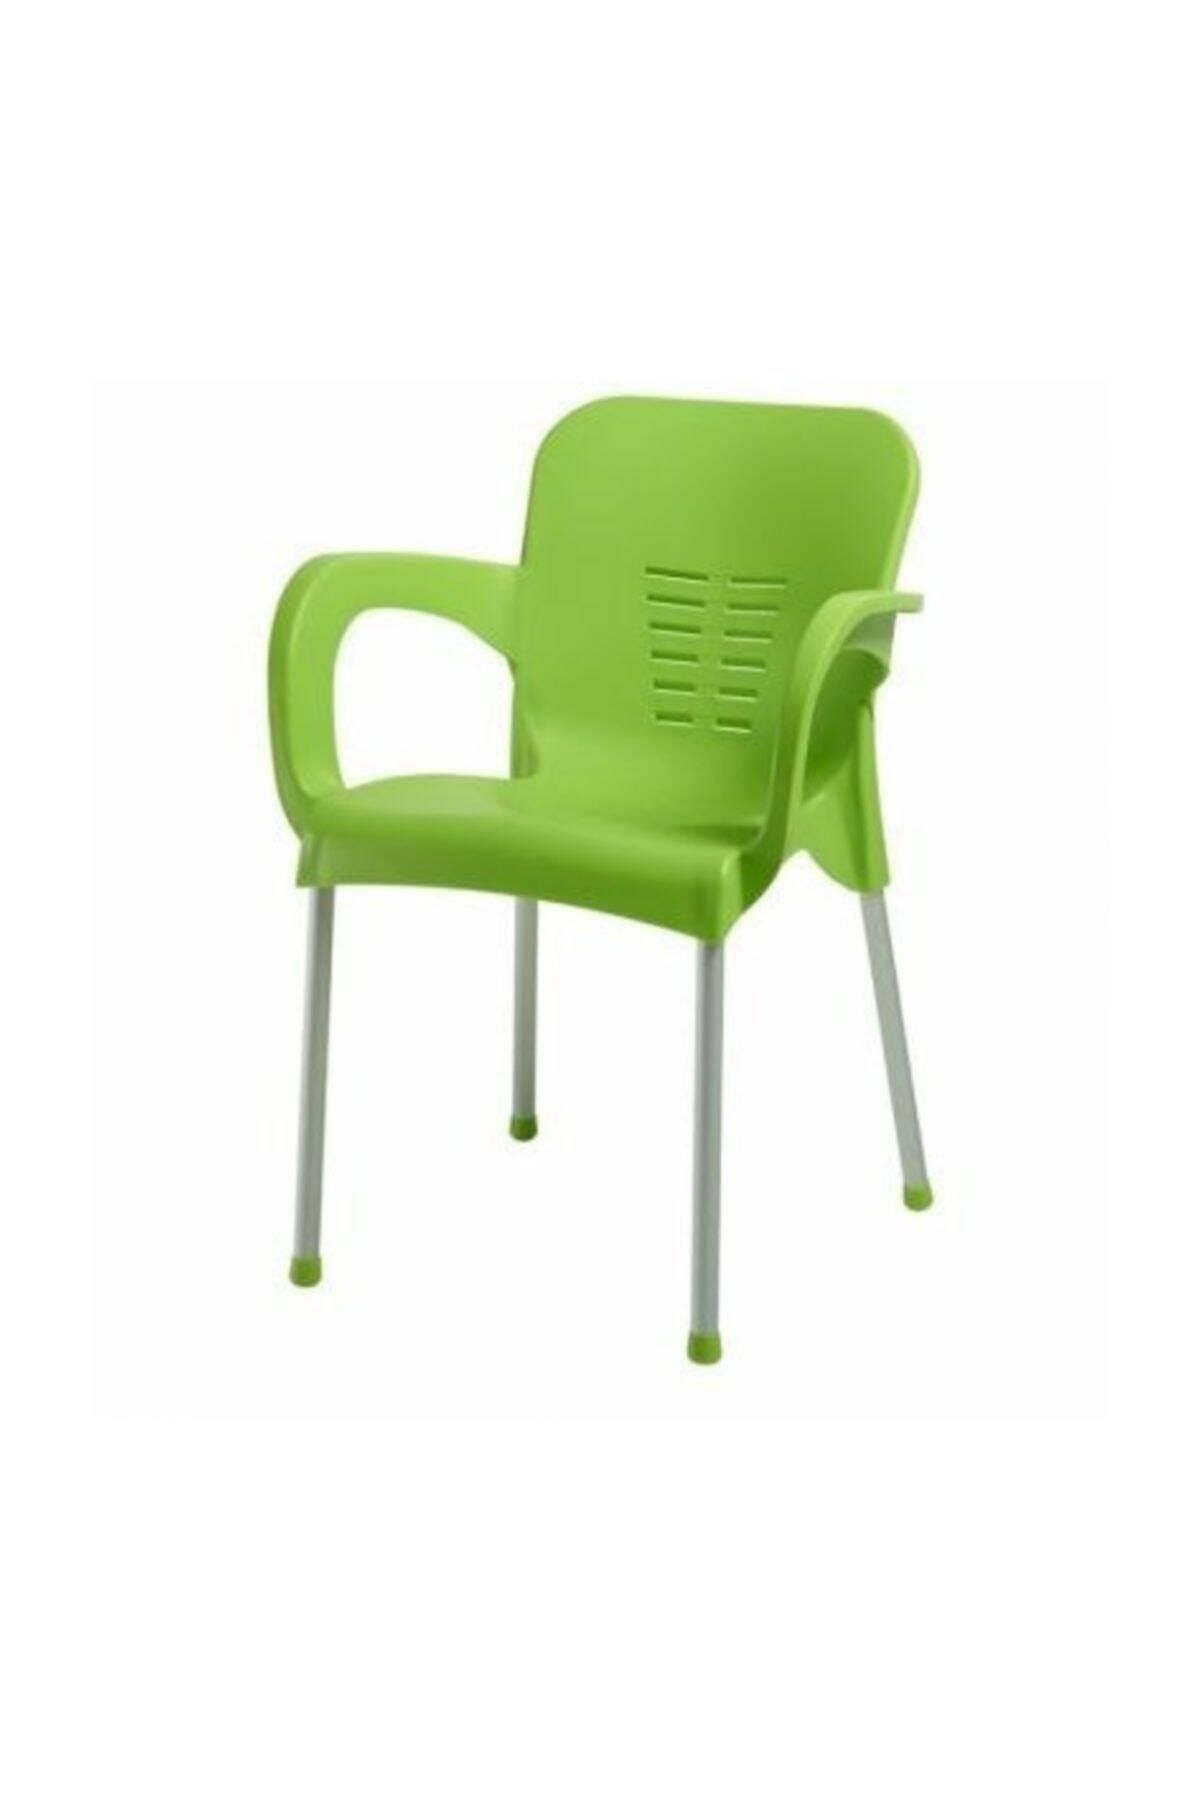 Özel Yapım 2 Adet Çok Sağlam Plastik Sandalye Yeşil - Günün Fırsatı - Rahat Oturum - Ücretsiz Kargo